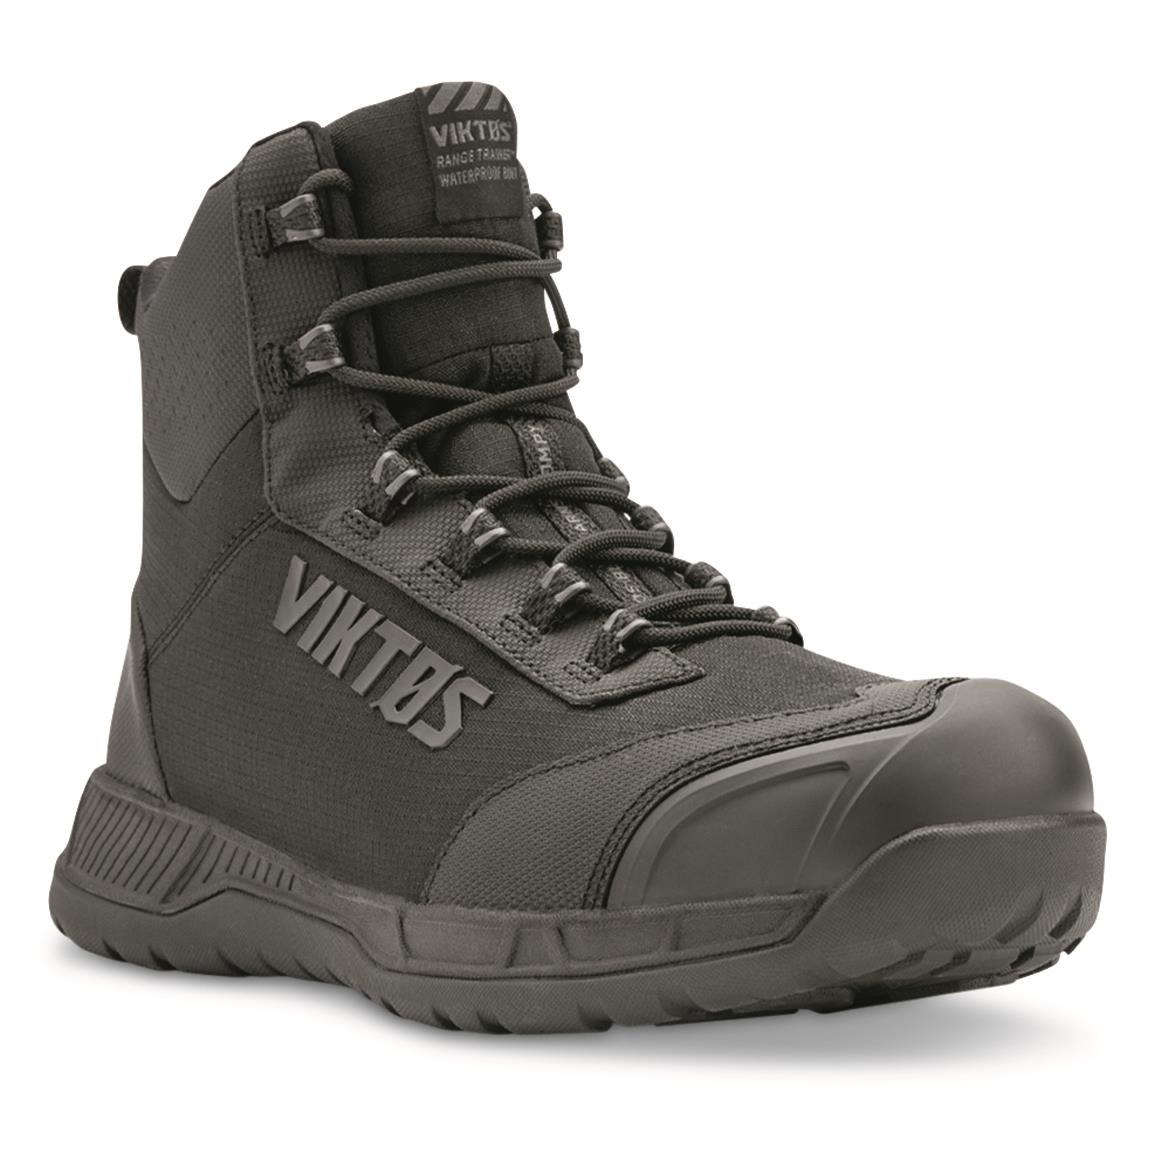 Viktos Men's Range Trainer Waterproof Mid Tactical Boots, Nightfall